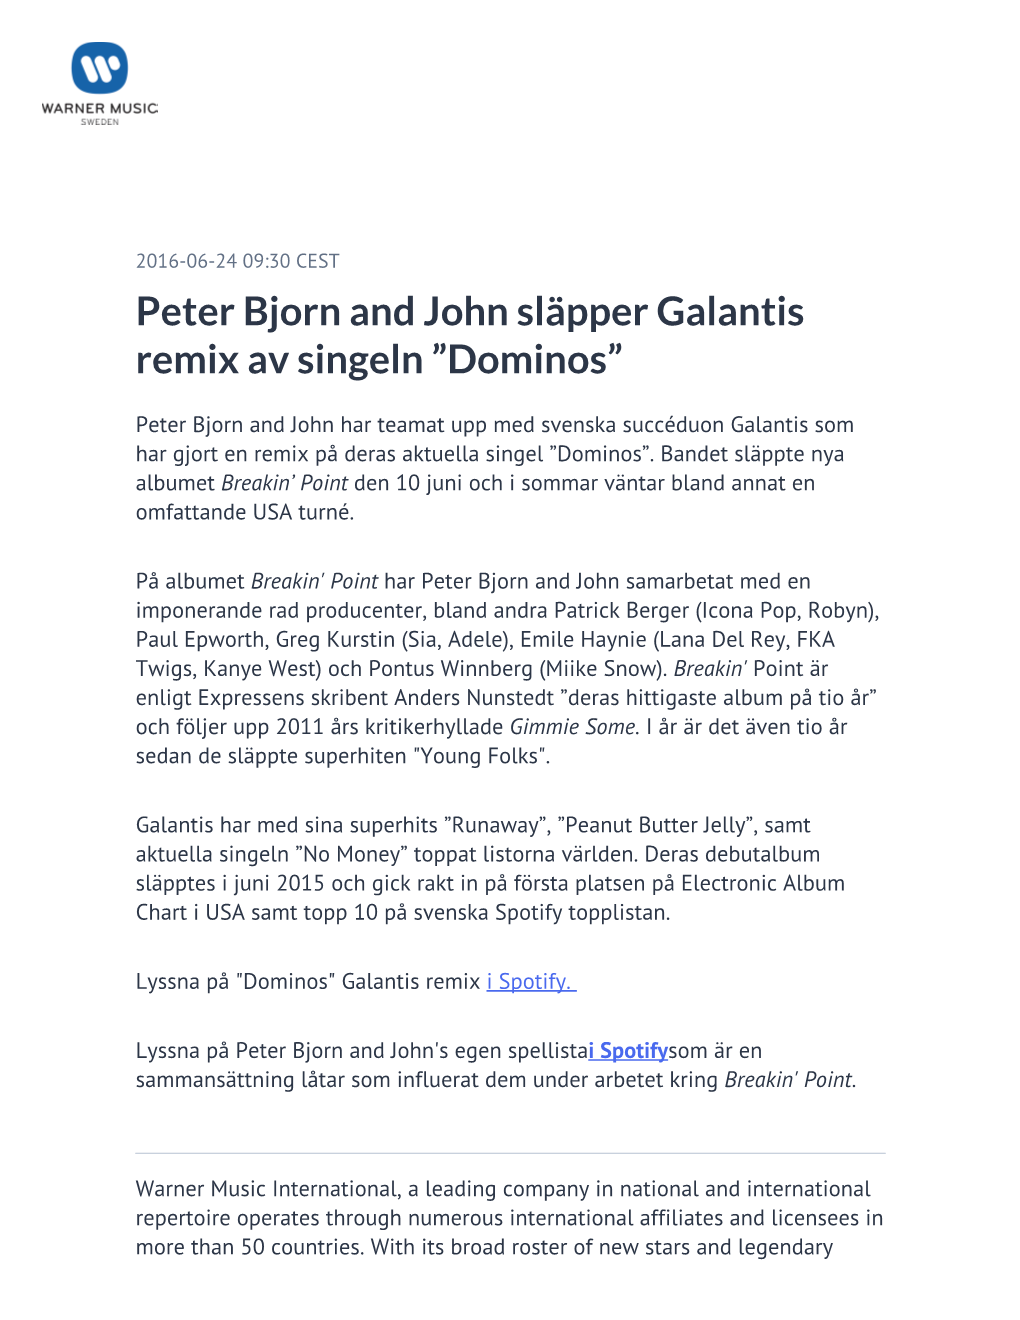 ​Peter Bjorn and John Släpper Galantis Remix Av Singeln ”Dominos”